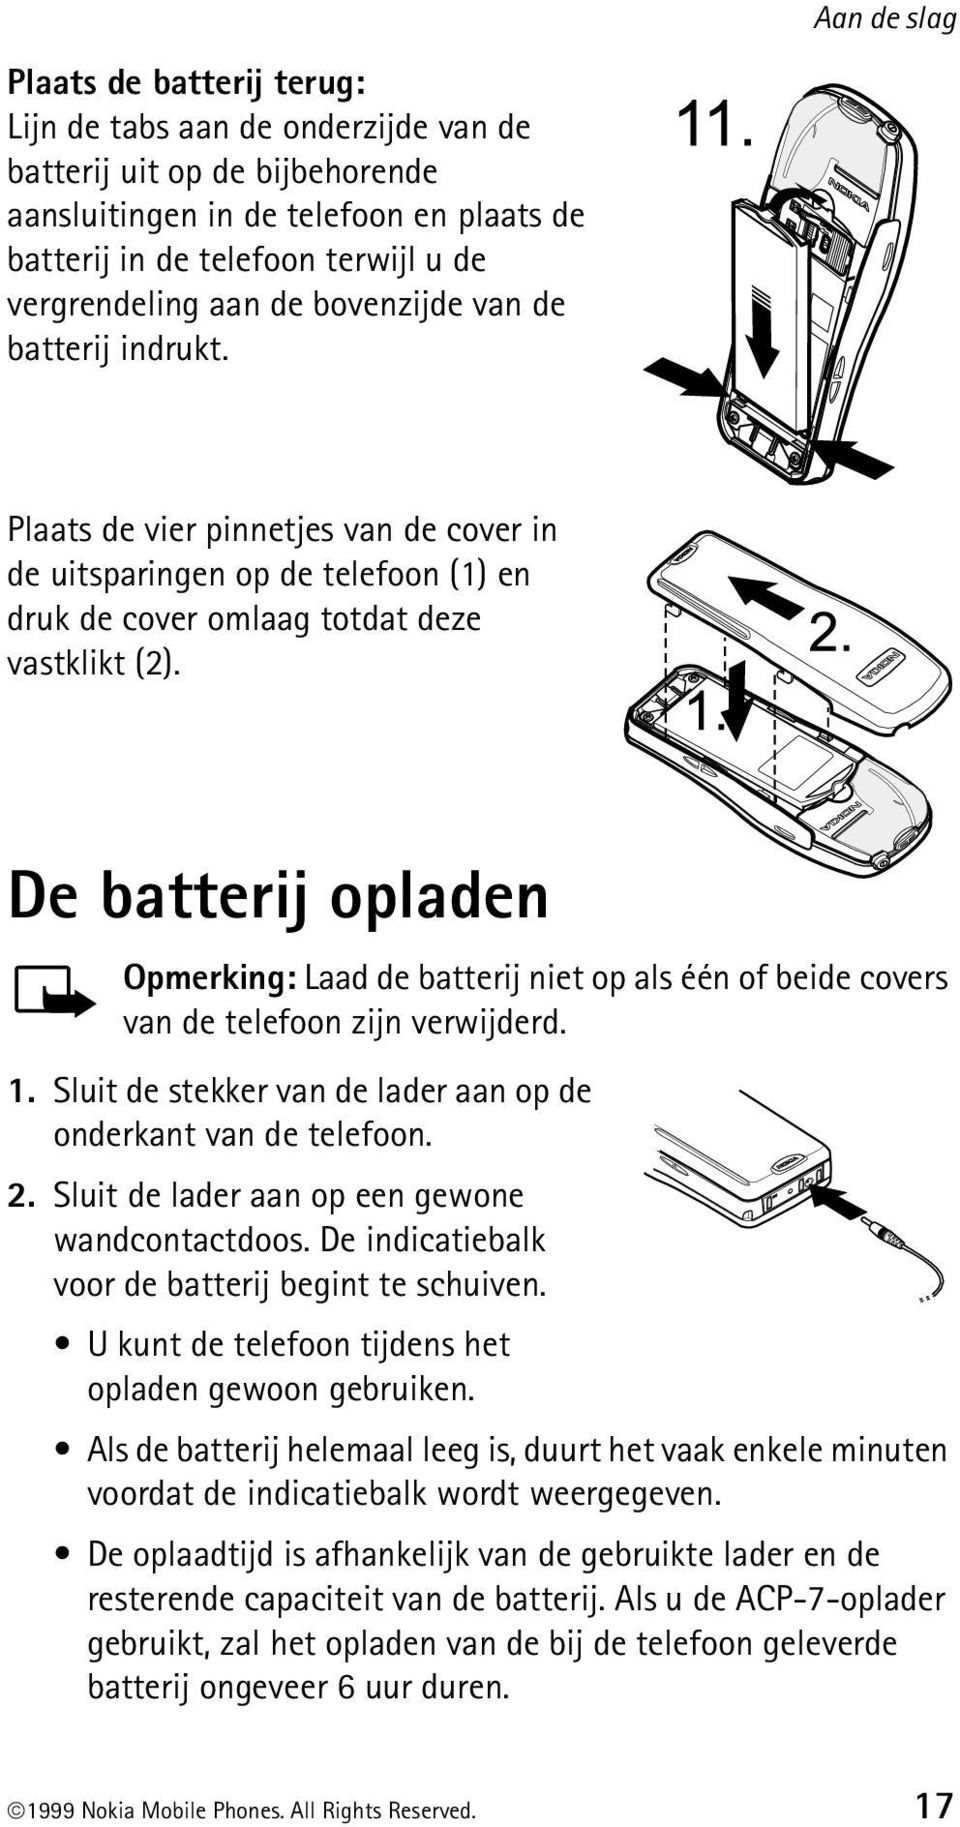 De batterij opladen Opmerking: Laad de batterij niet op als één of beide covers van de telefoon zijn verwijderd. 1. Sluit de stekker van de lader aan op de onderkant van de telefoon. 2.